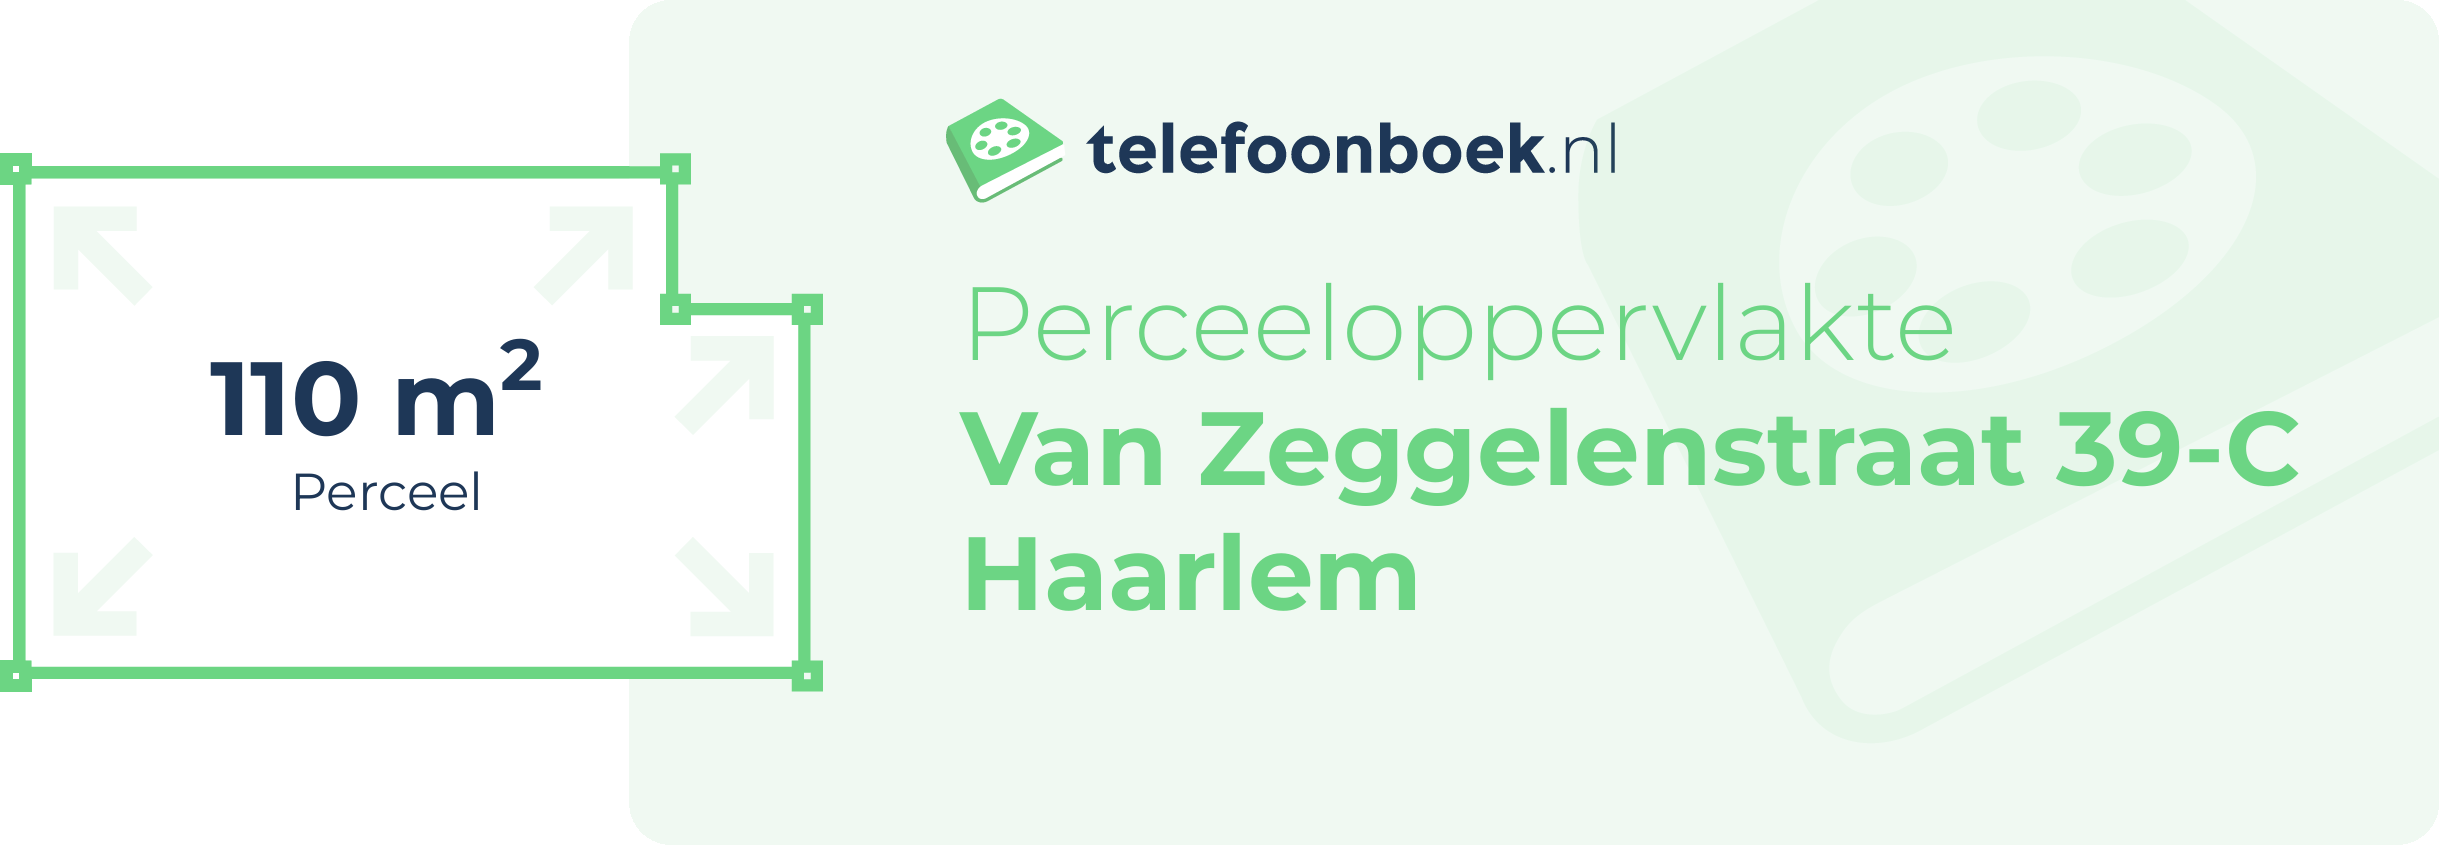 Perceeloppervlakte Van Zeggelenstraat 39-C Haarlem